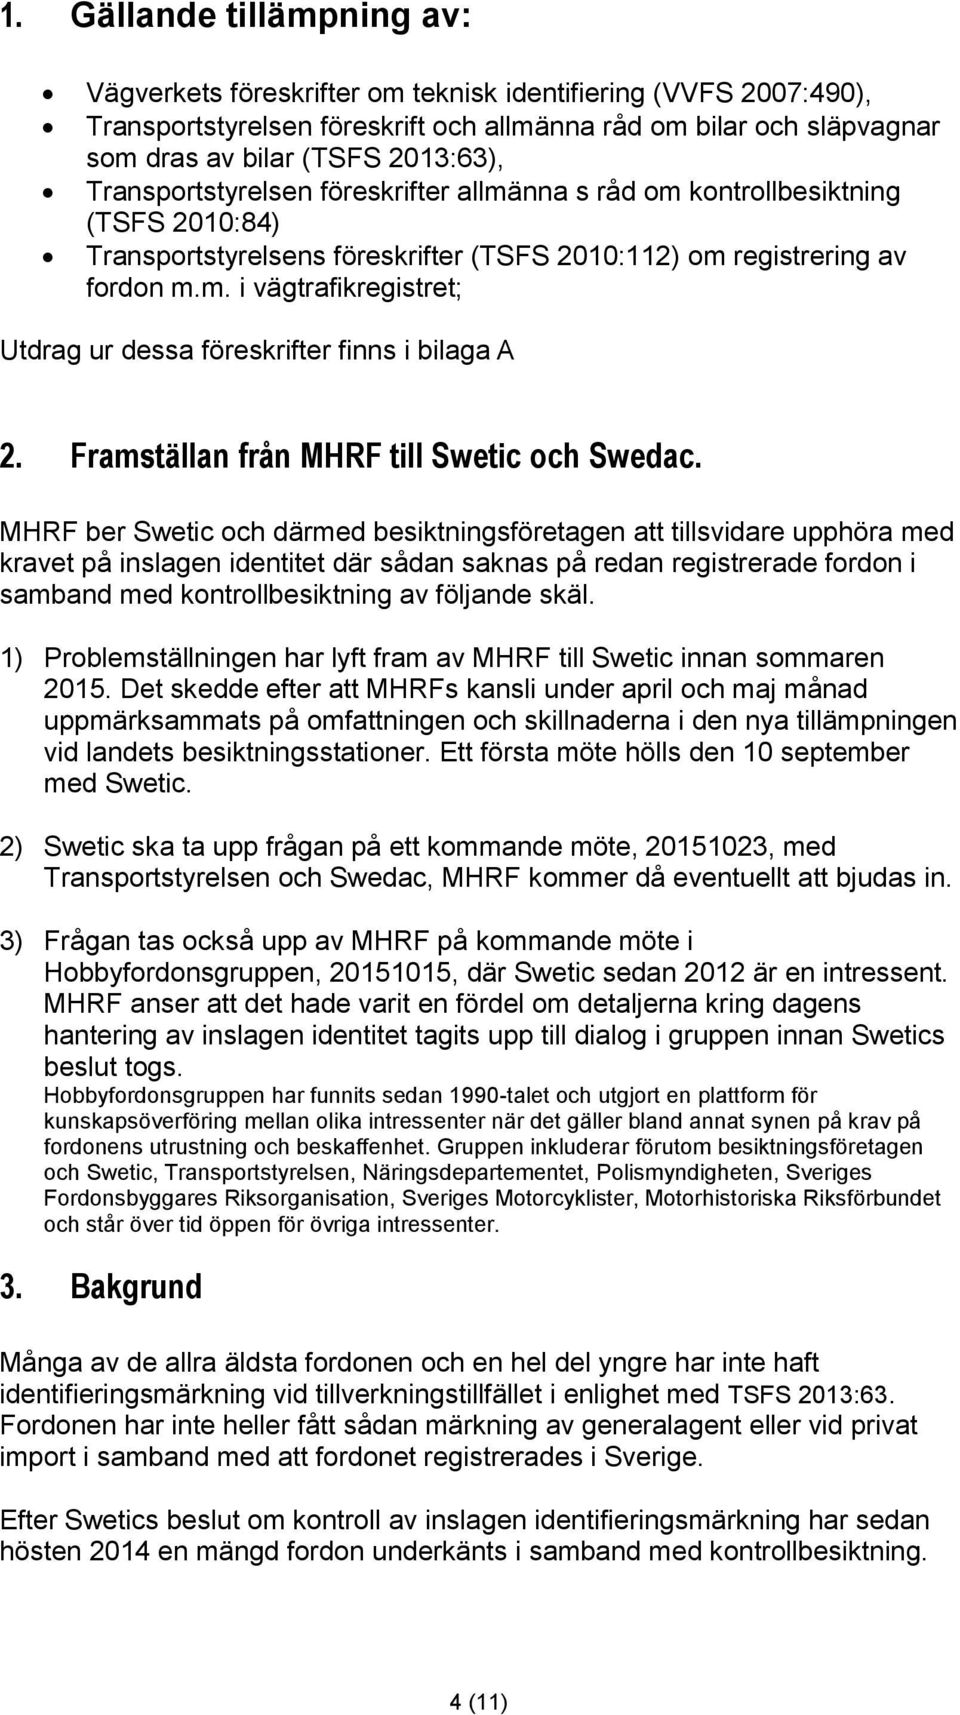 Framställan från MHRF till Swetic och Swedac.